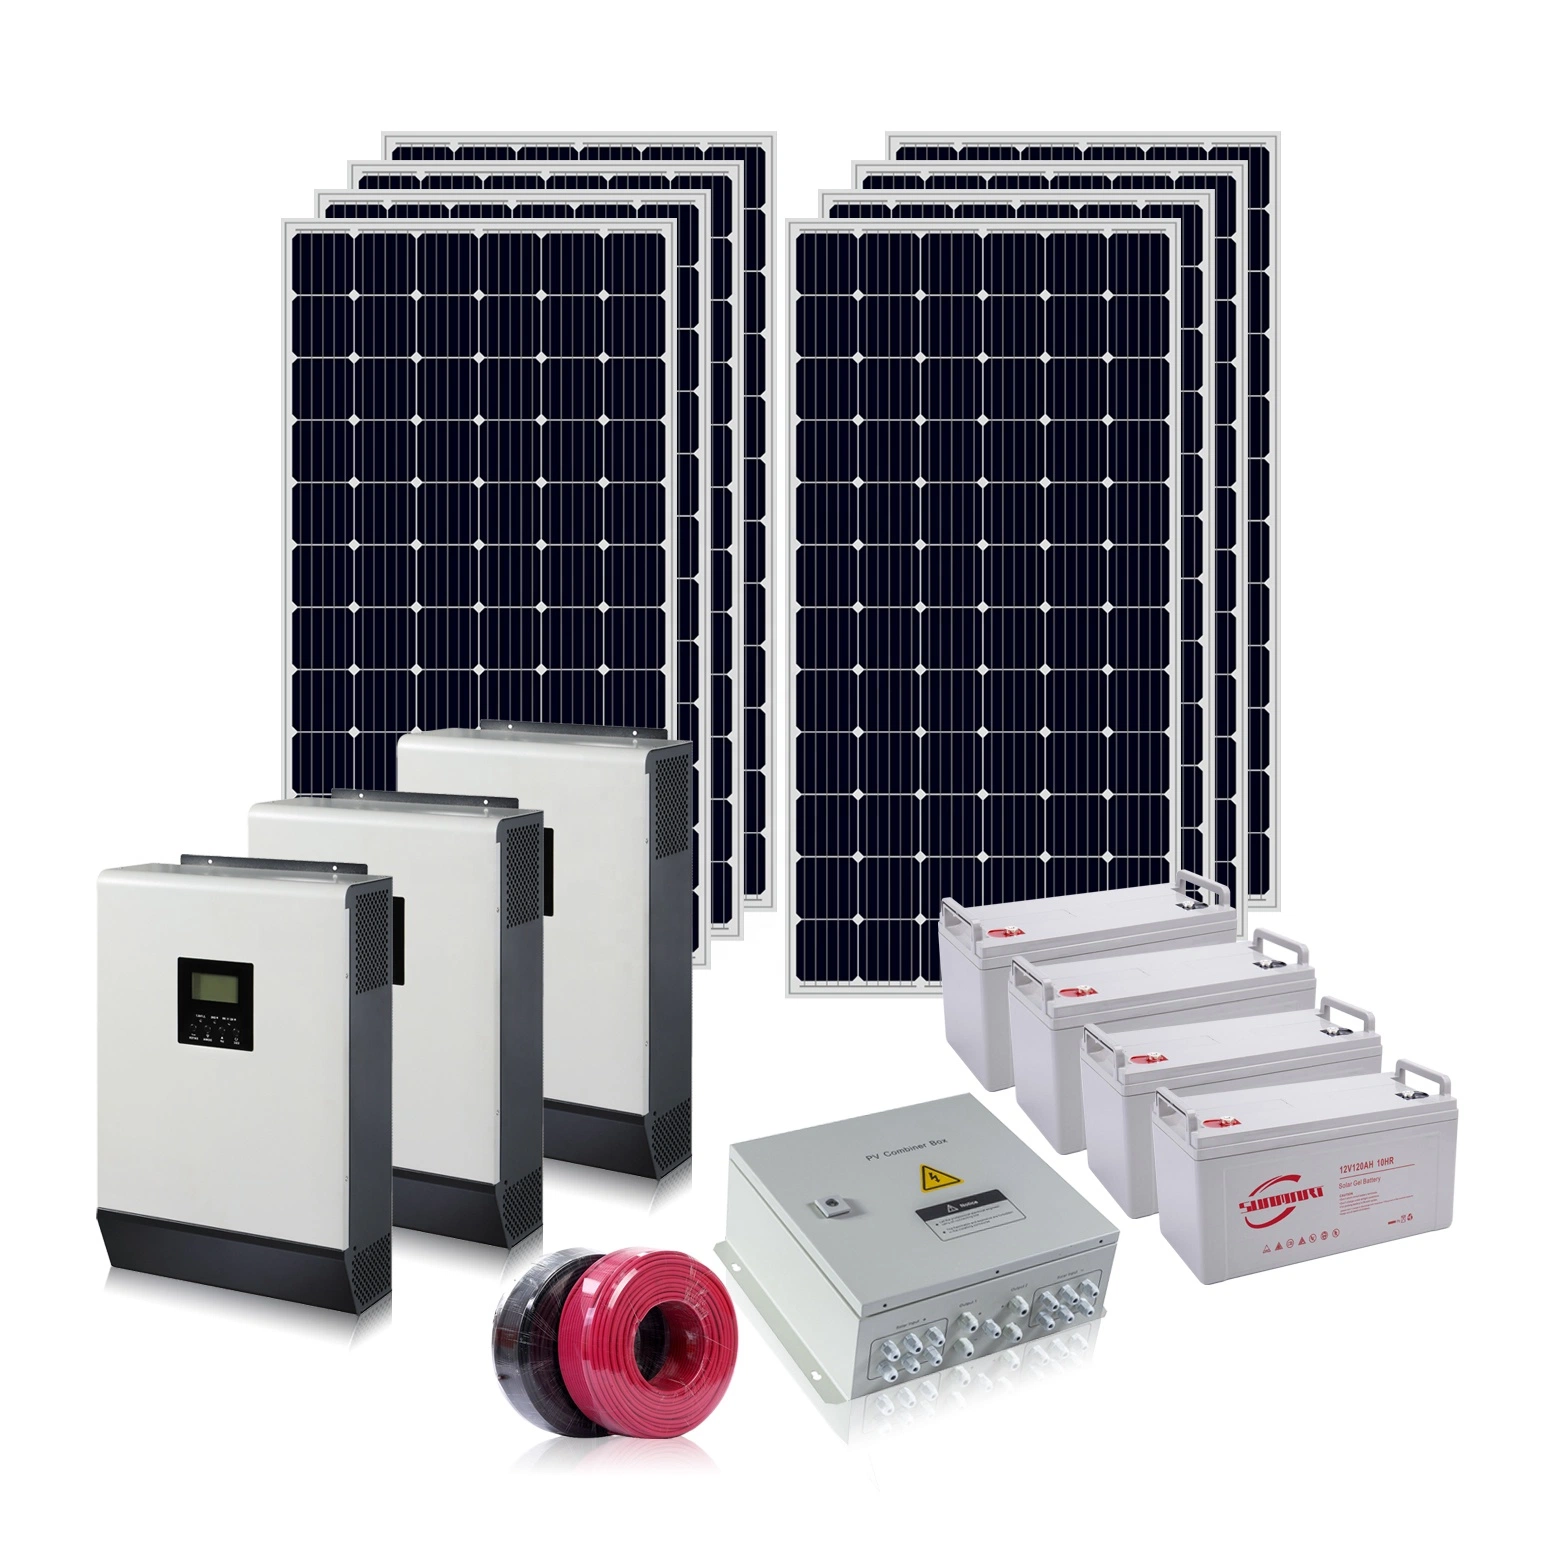 Commerce de gros sur la grille d'Installation facile du système solaire 5kw OEM hors système d'énergie solaire de la grille d'alimentation de puissance d'accueil